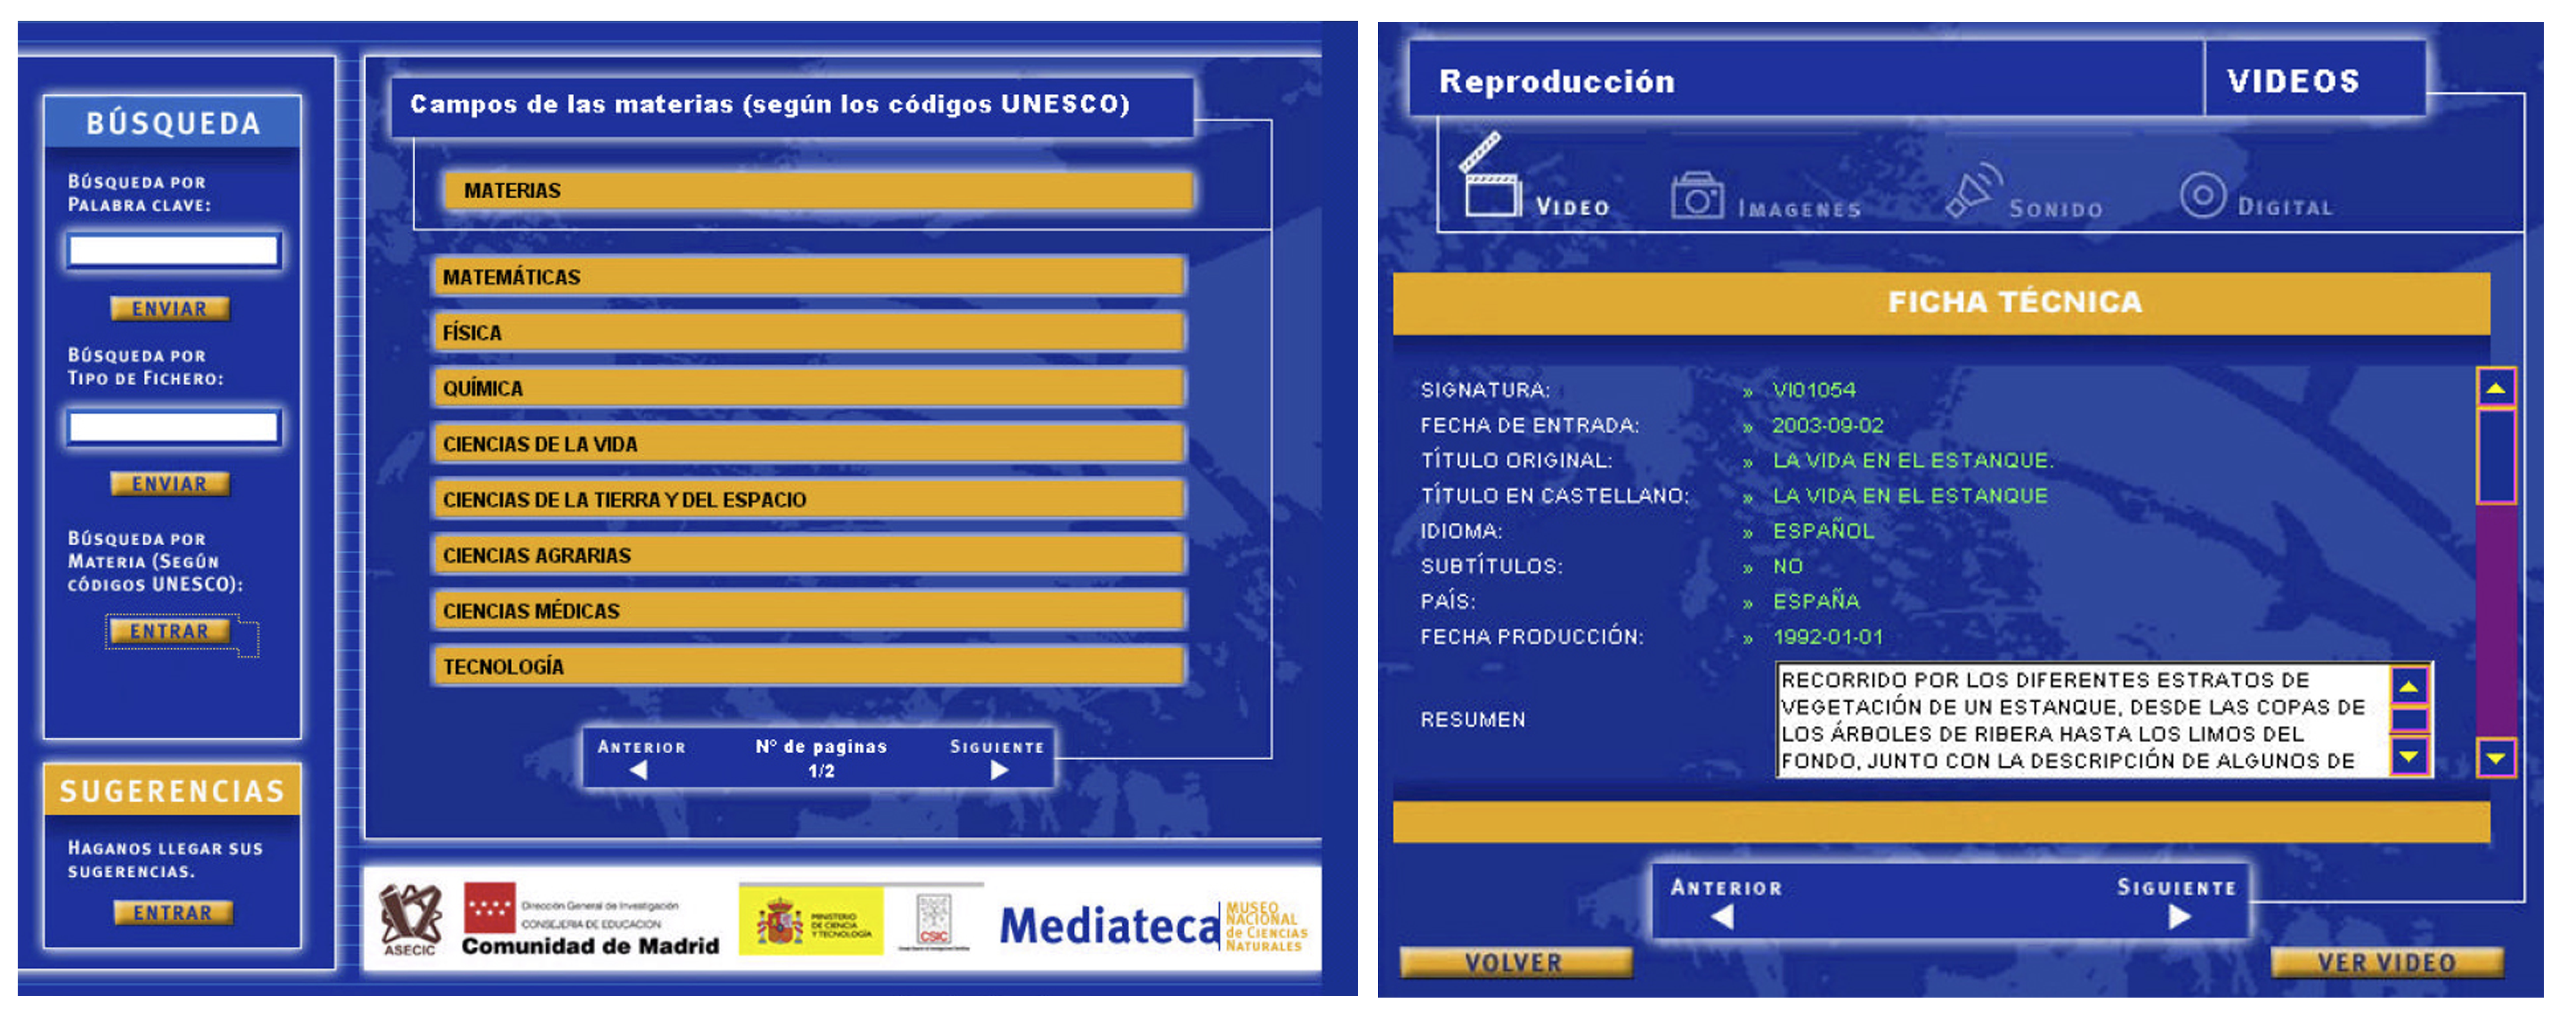 Interfaz de Mediateca - Búsqueda por materias